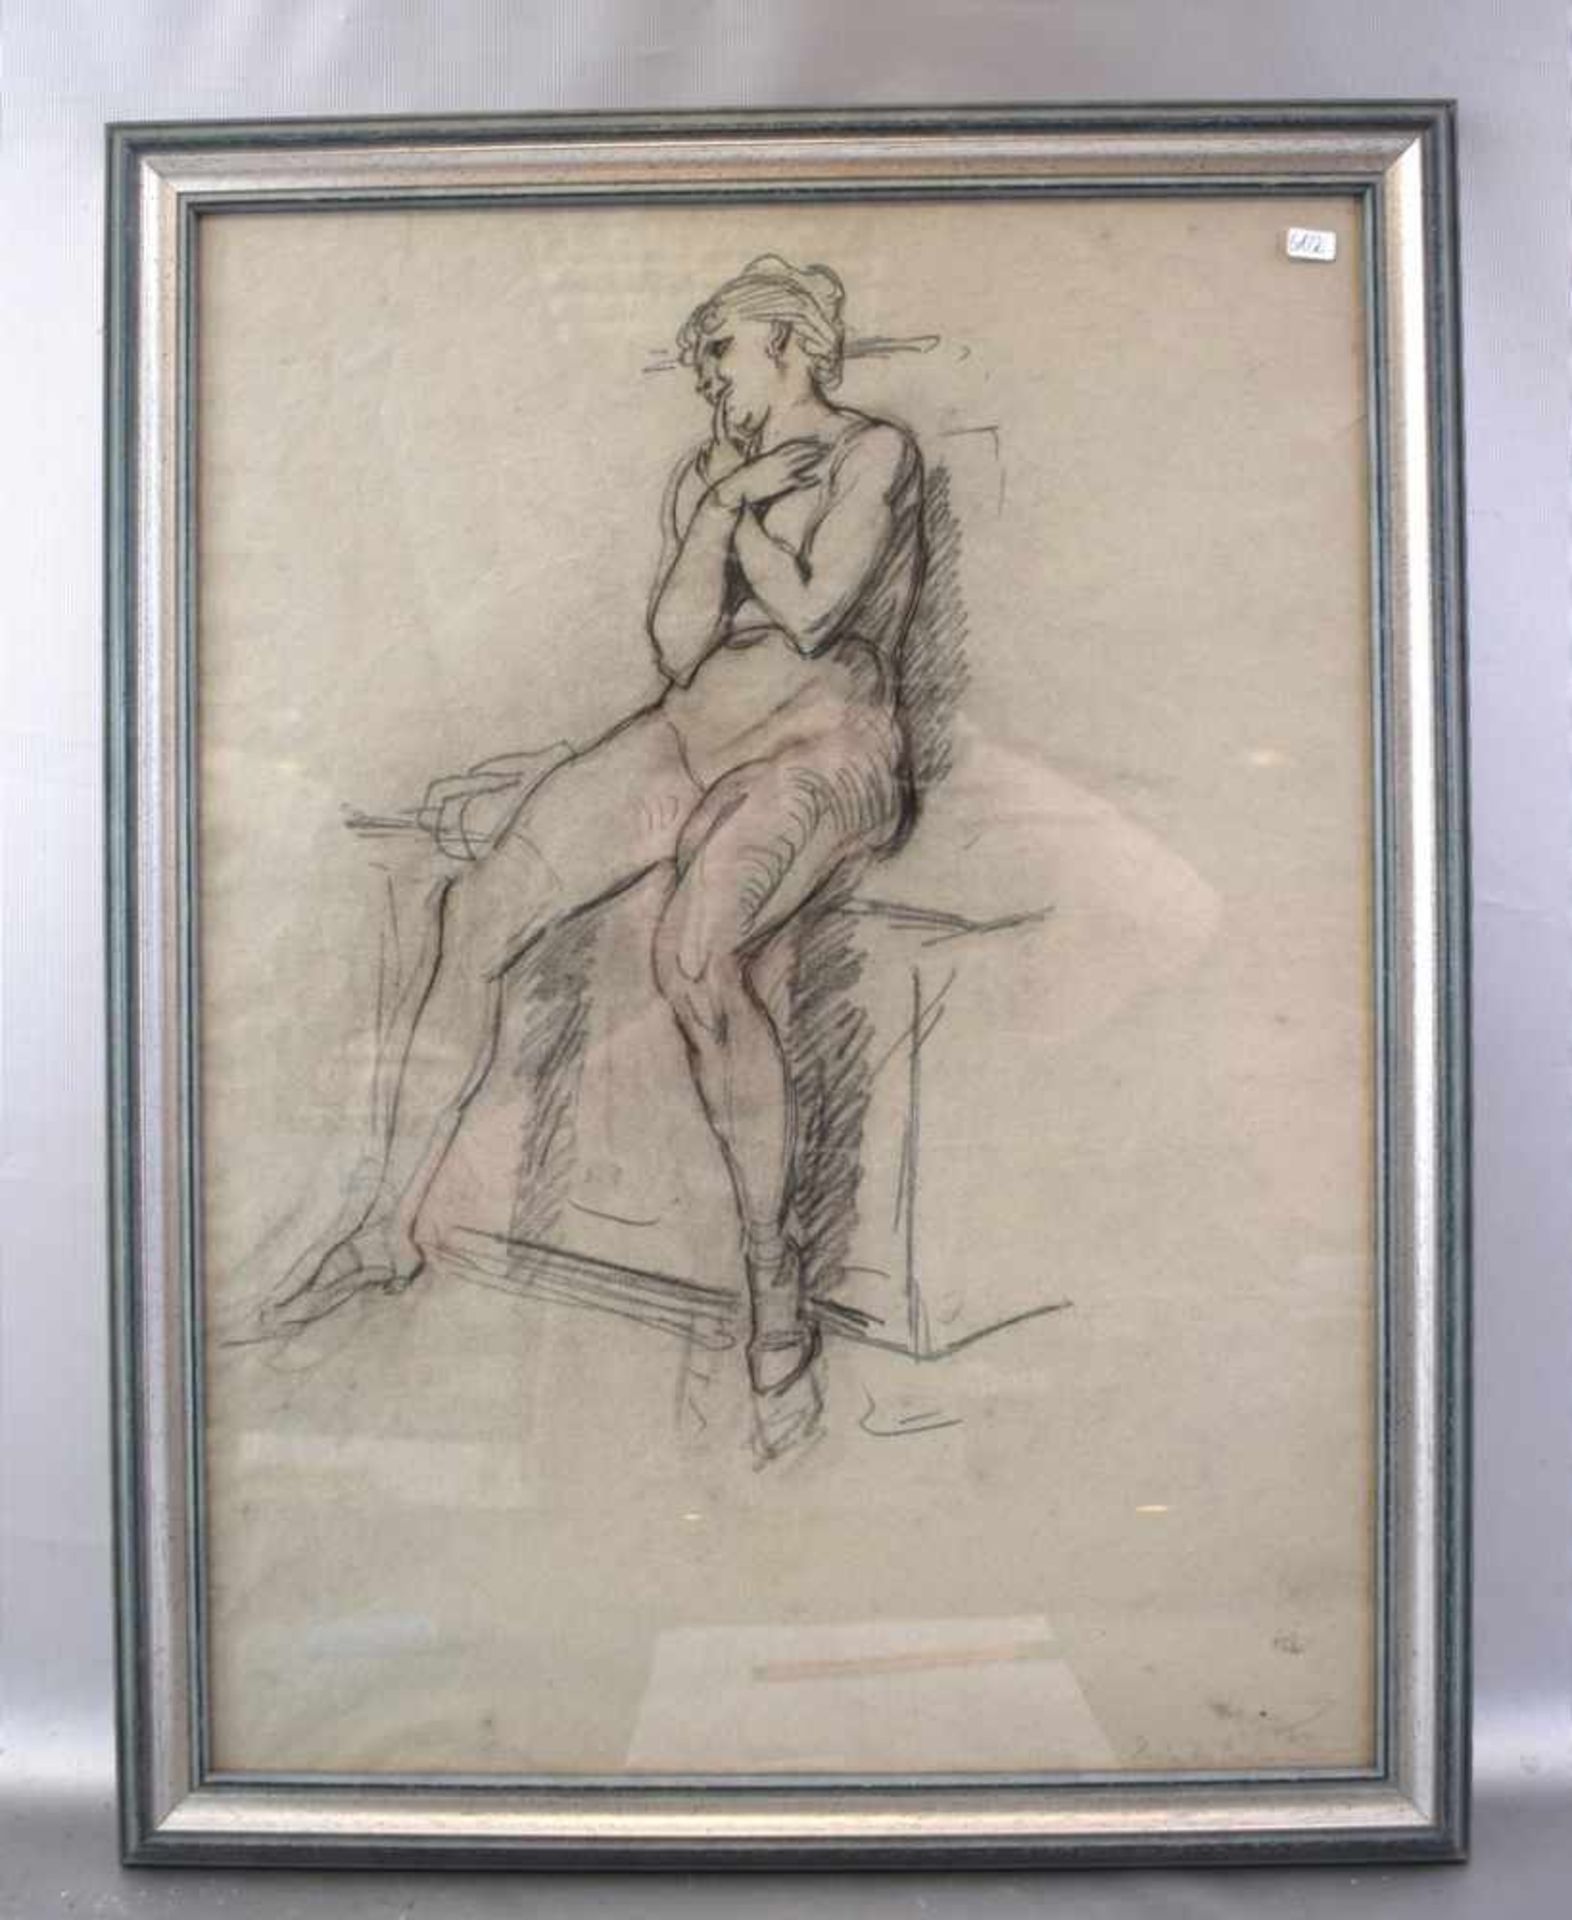 Bleistiftzeichnung Hinter den Kulissen, sitzender weiblicher Akt., u.r.bez., 42 X 57 cm, Rahmen